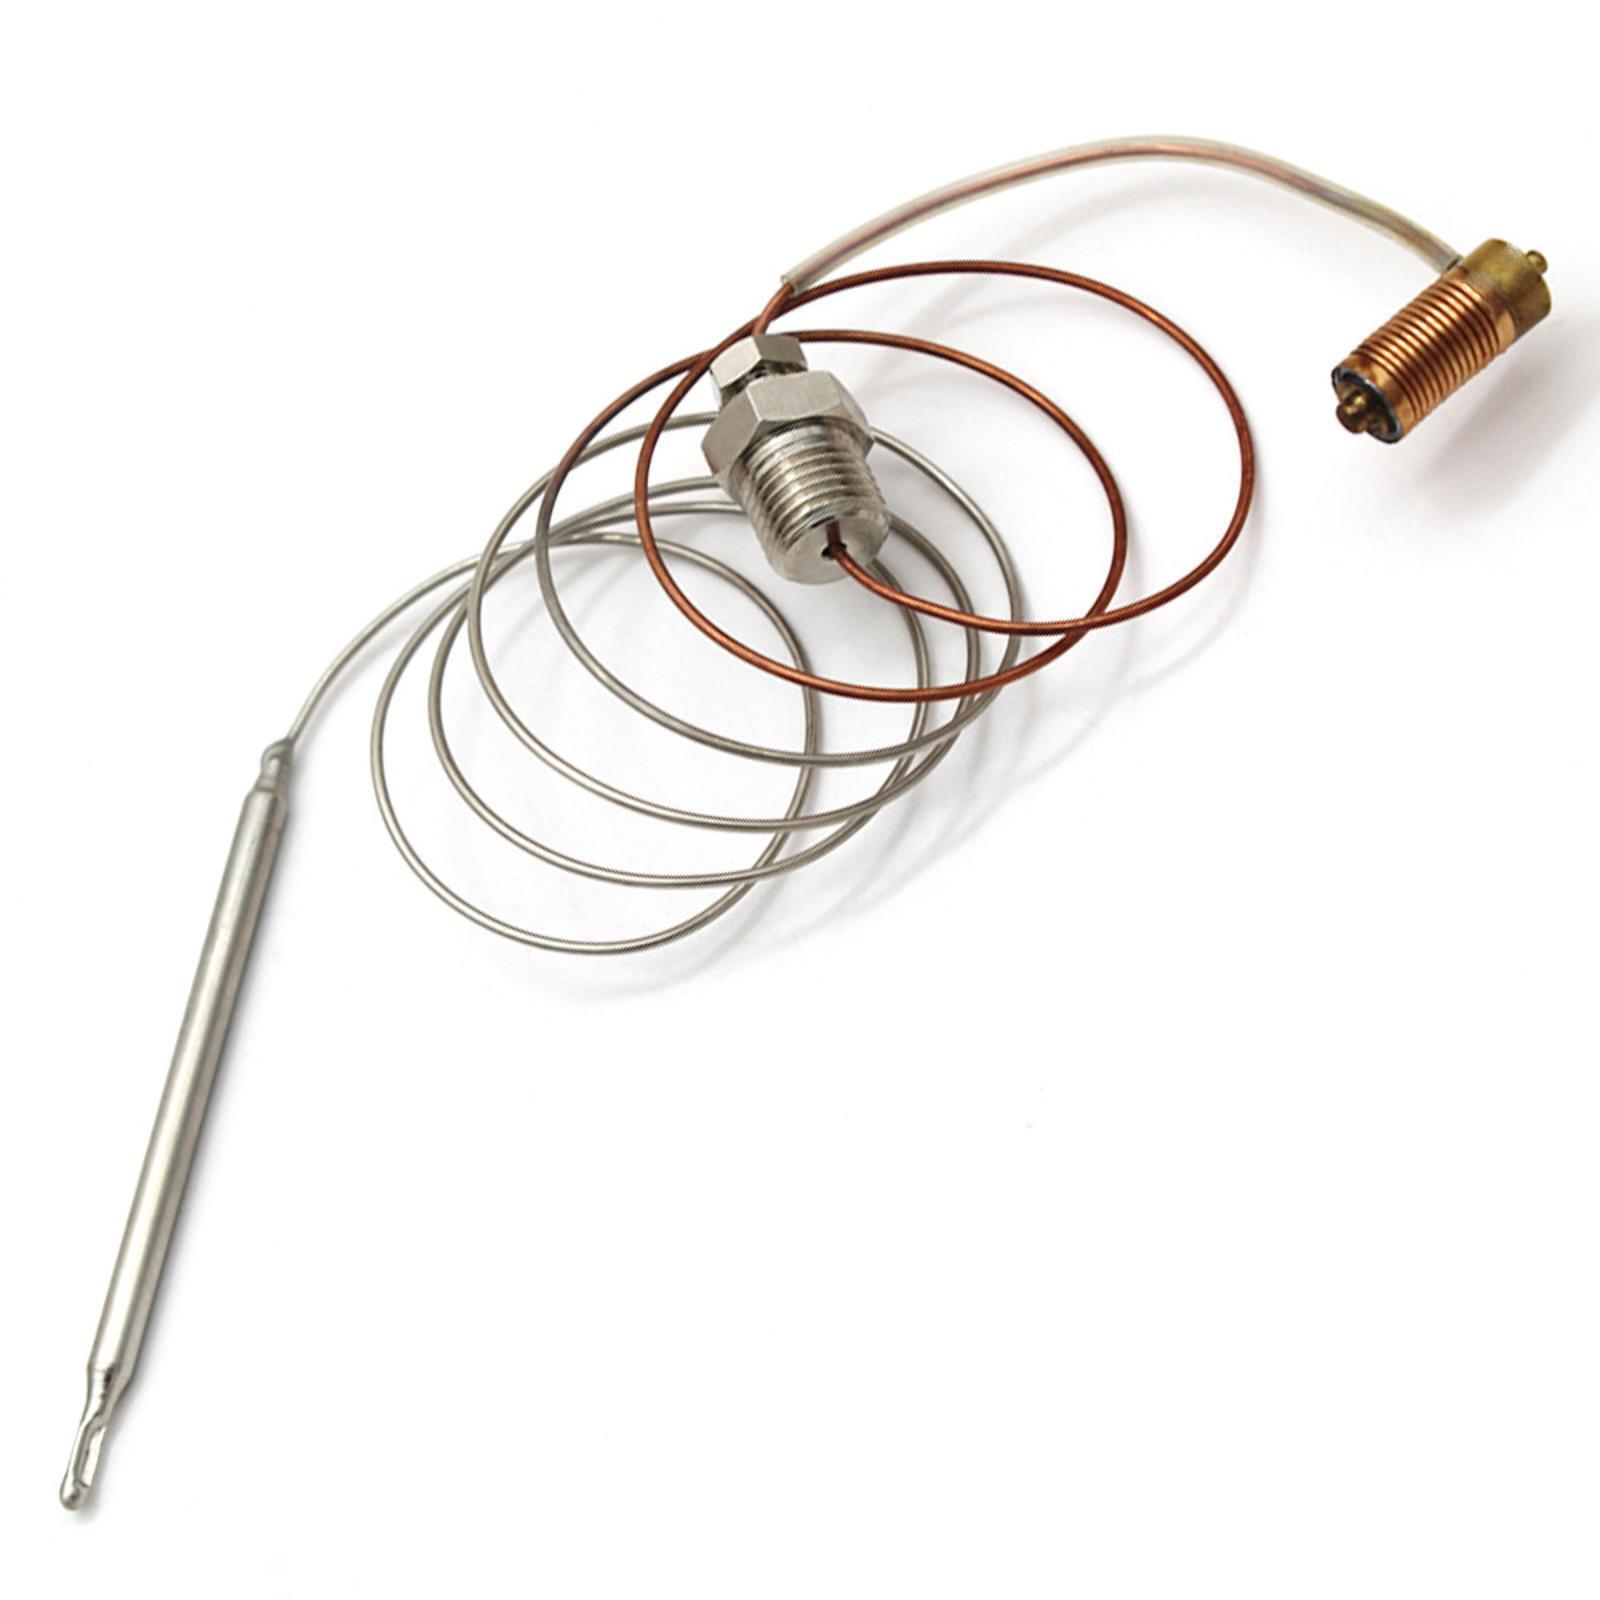 Thermostat Temperature Sensor Probe Rod Wire Accessories For Mini Sit 710 Gas